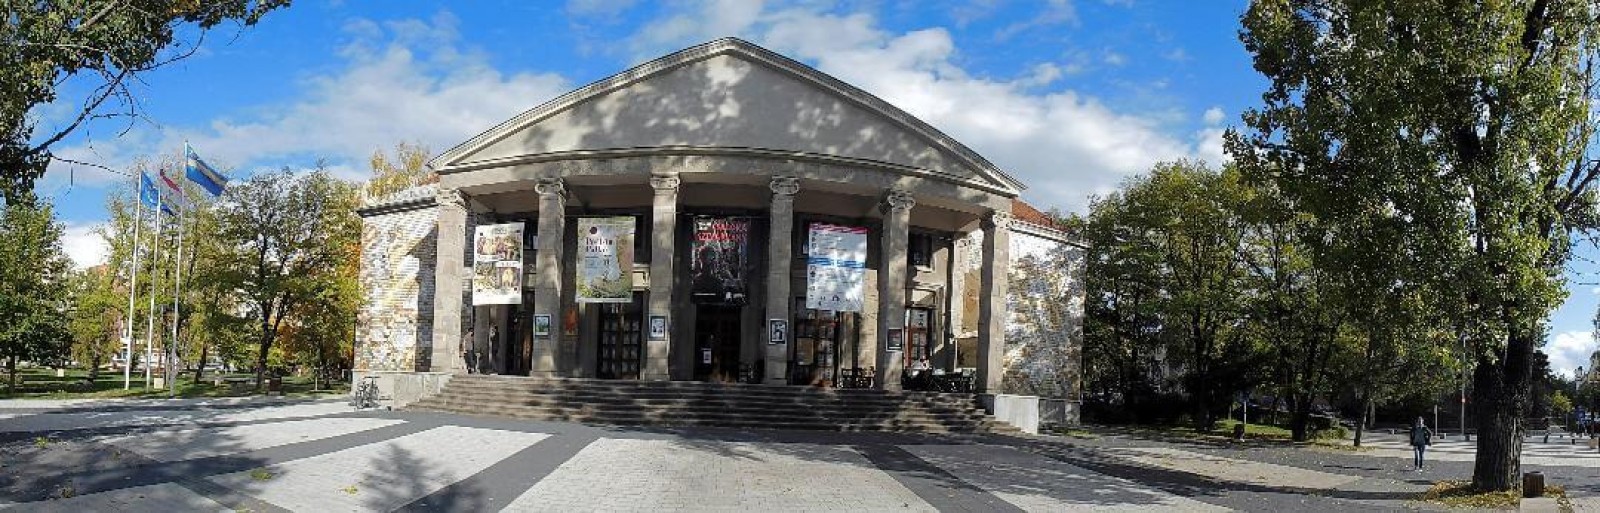 Teatrul Csíki Játékszín - intrare